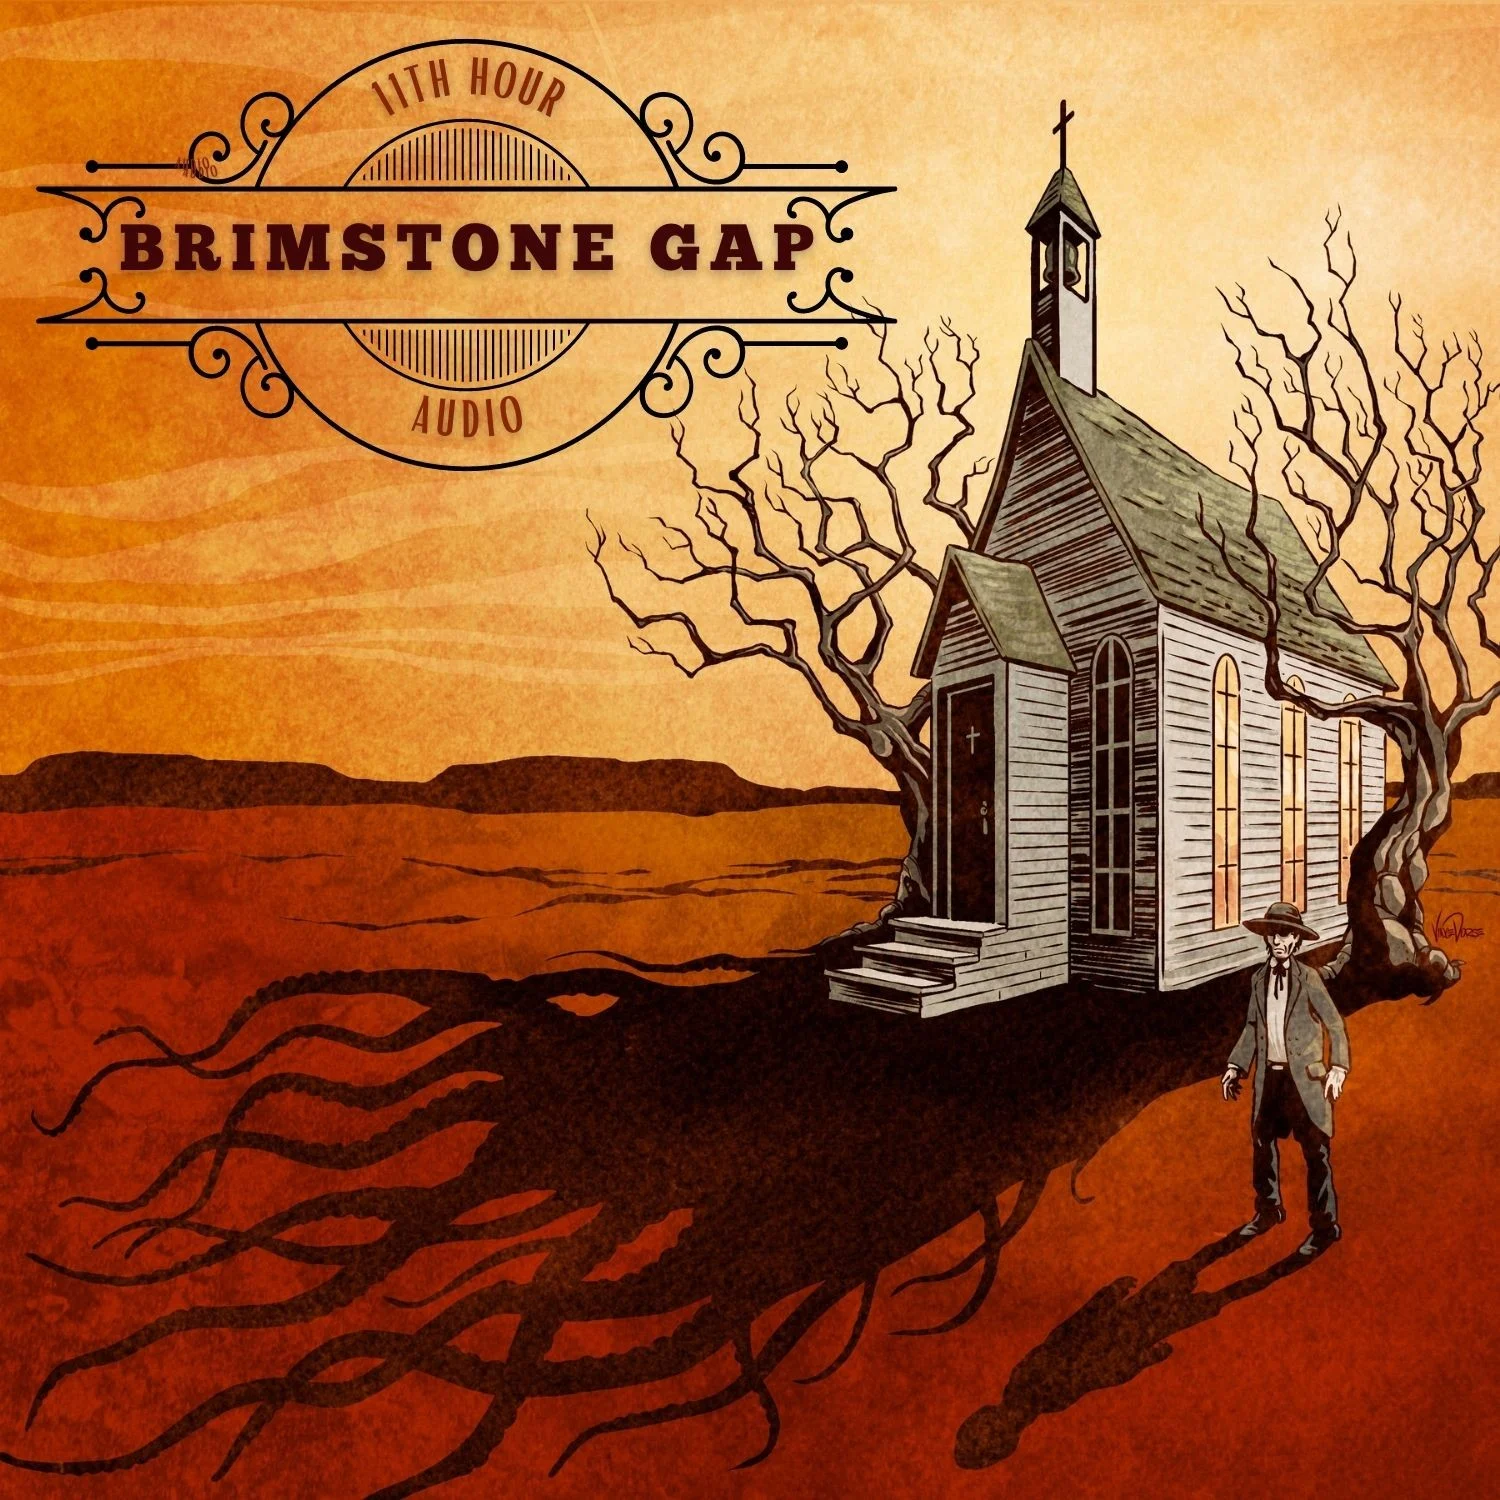 cover art for Brimstone Gap featuring a lone, old west church in a barren dessert landscape.